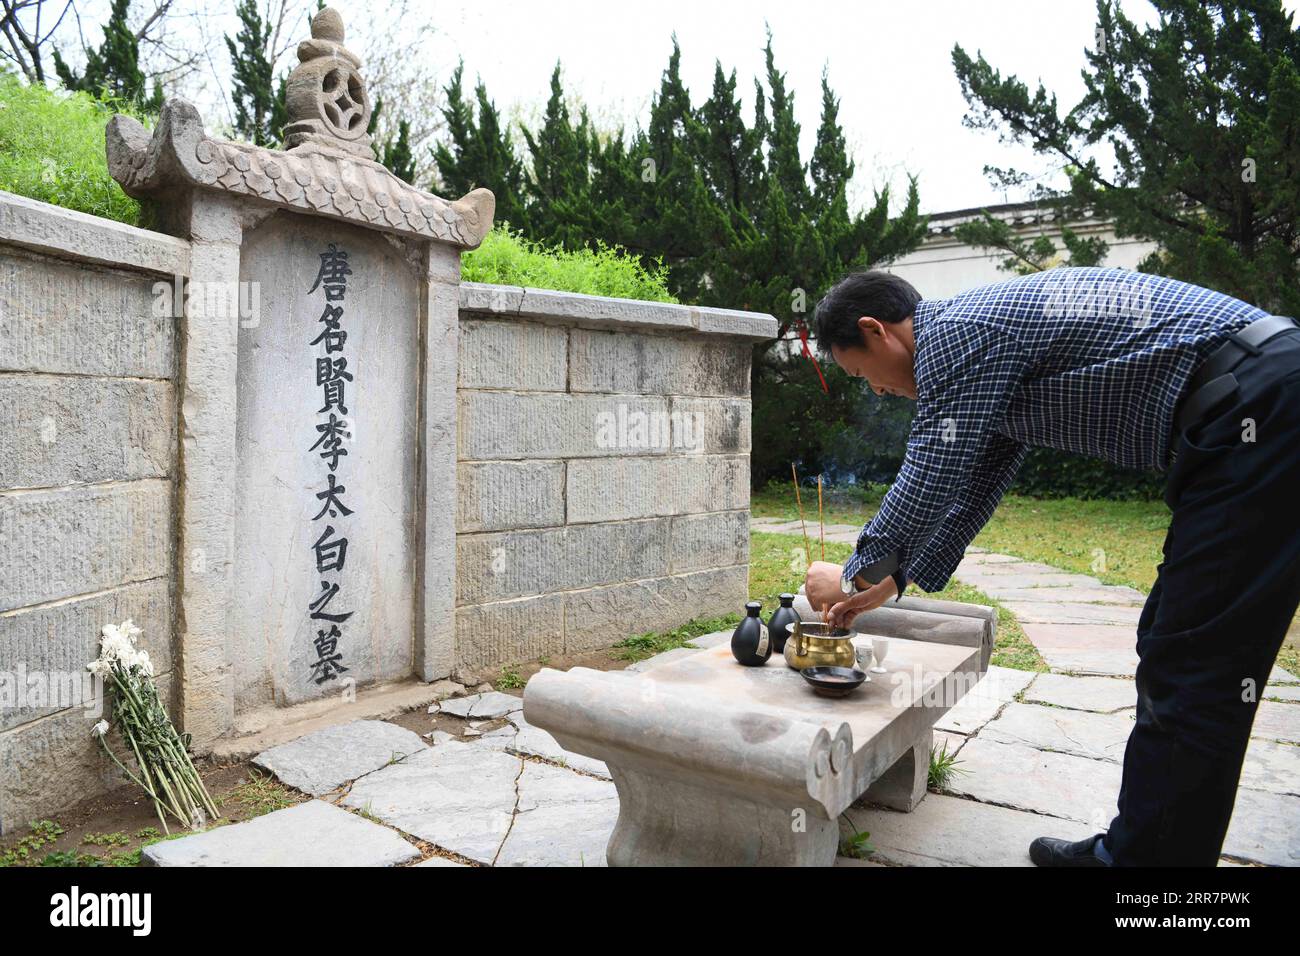 210402 -- DANGTU, 2 aprile 2021 -- GU Changxin paga rispetto a li Bai di fronte alla sua tomba nel parco culturale li Bai nella contea di Dangtu della città di Maanshan, nella provincia di Anhui della Cina orientale, 31 marzo 2021. La tomba di li Bai, un famoso poeta della dinastia Tang 618-907, si trova ai piedi del monte Qingshan nella contea di Dangtu nella città di Maanshan. Dopo la morte di li Bai a Dangtu, il suo buon amico GU Lanxin offrì la sua terra come luogo di sepoltura di li Bai. Da allora, la famiglia GU è diventata custode della tomba di li Bai, che continua ancora oggi. Nel 1985, il diciottenne GU Changxin divenne il custode della tomba della 49a generazione Foto Stock